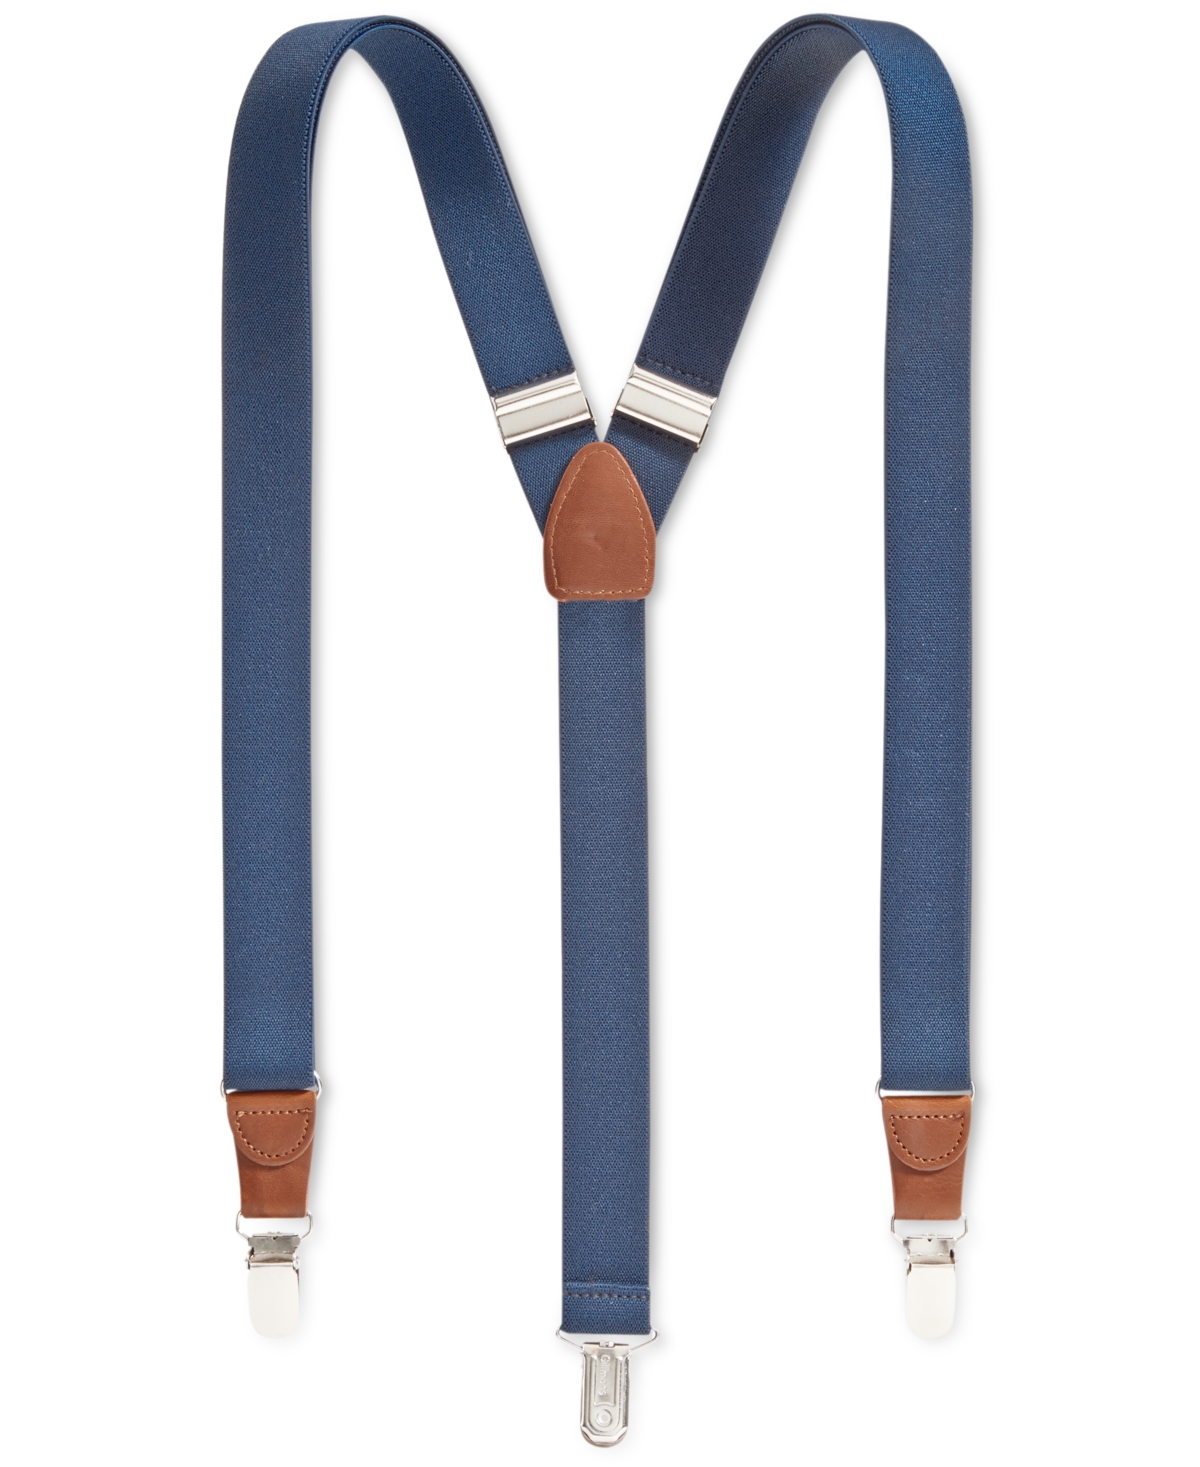 Men's Solid Suspenders, Created for Macy's" - Navy